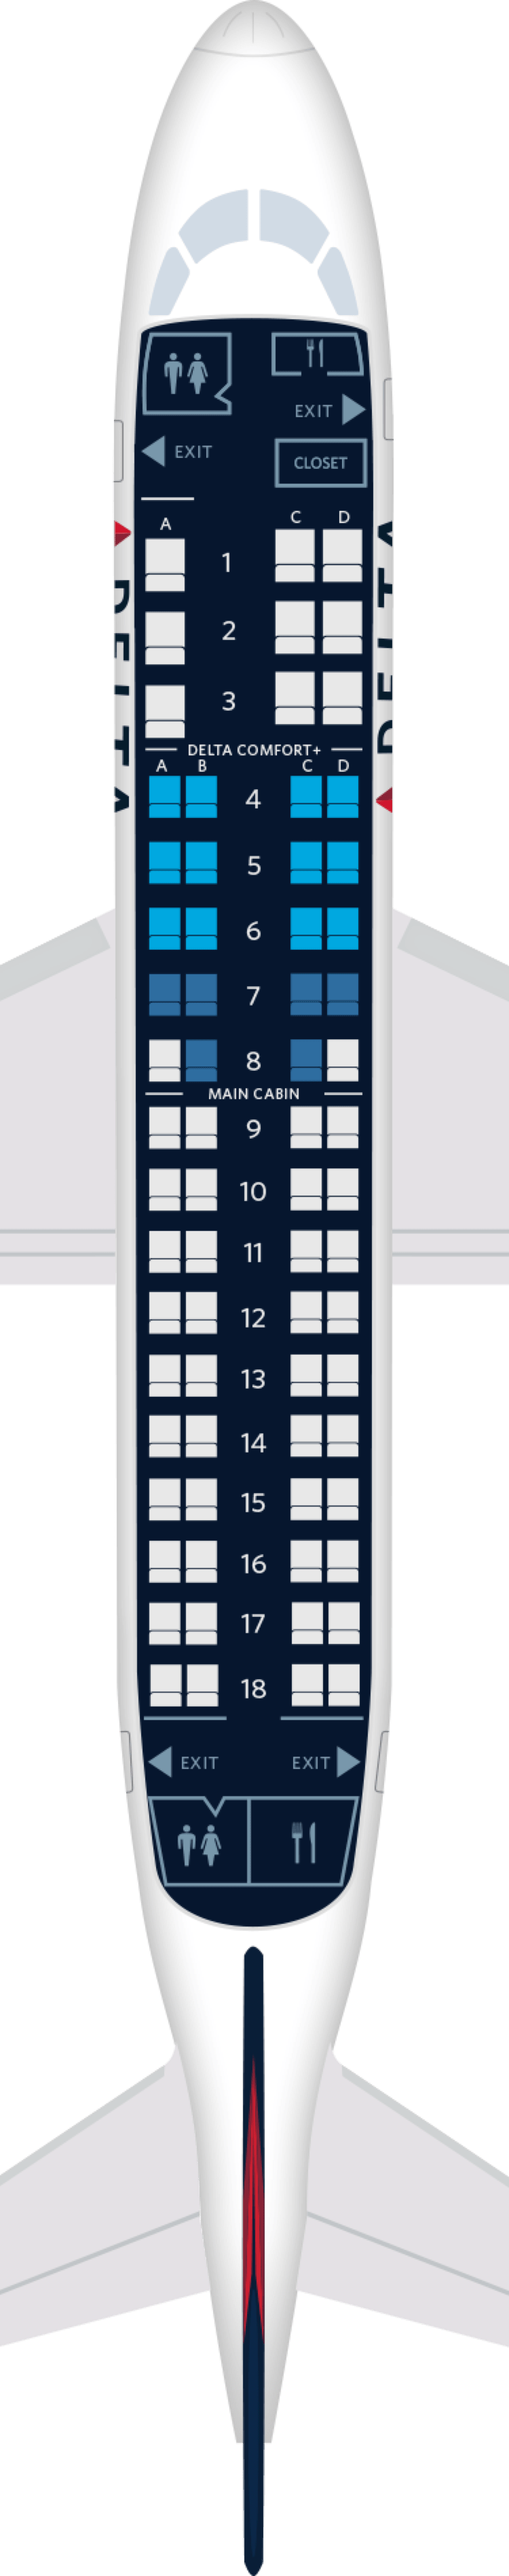 Embraer ERJ-170 Aircraft Seat Maps, Specs & Amenities : Delta Air Lines